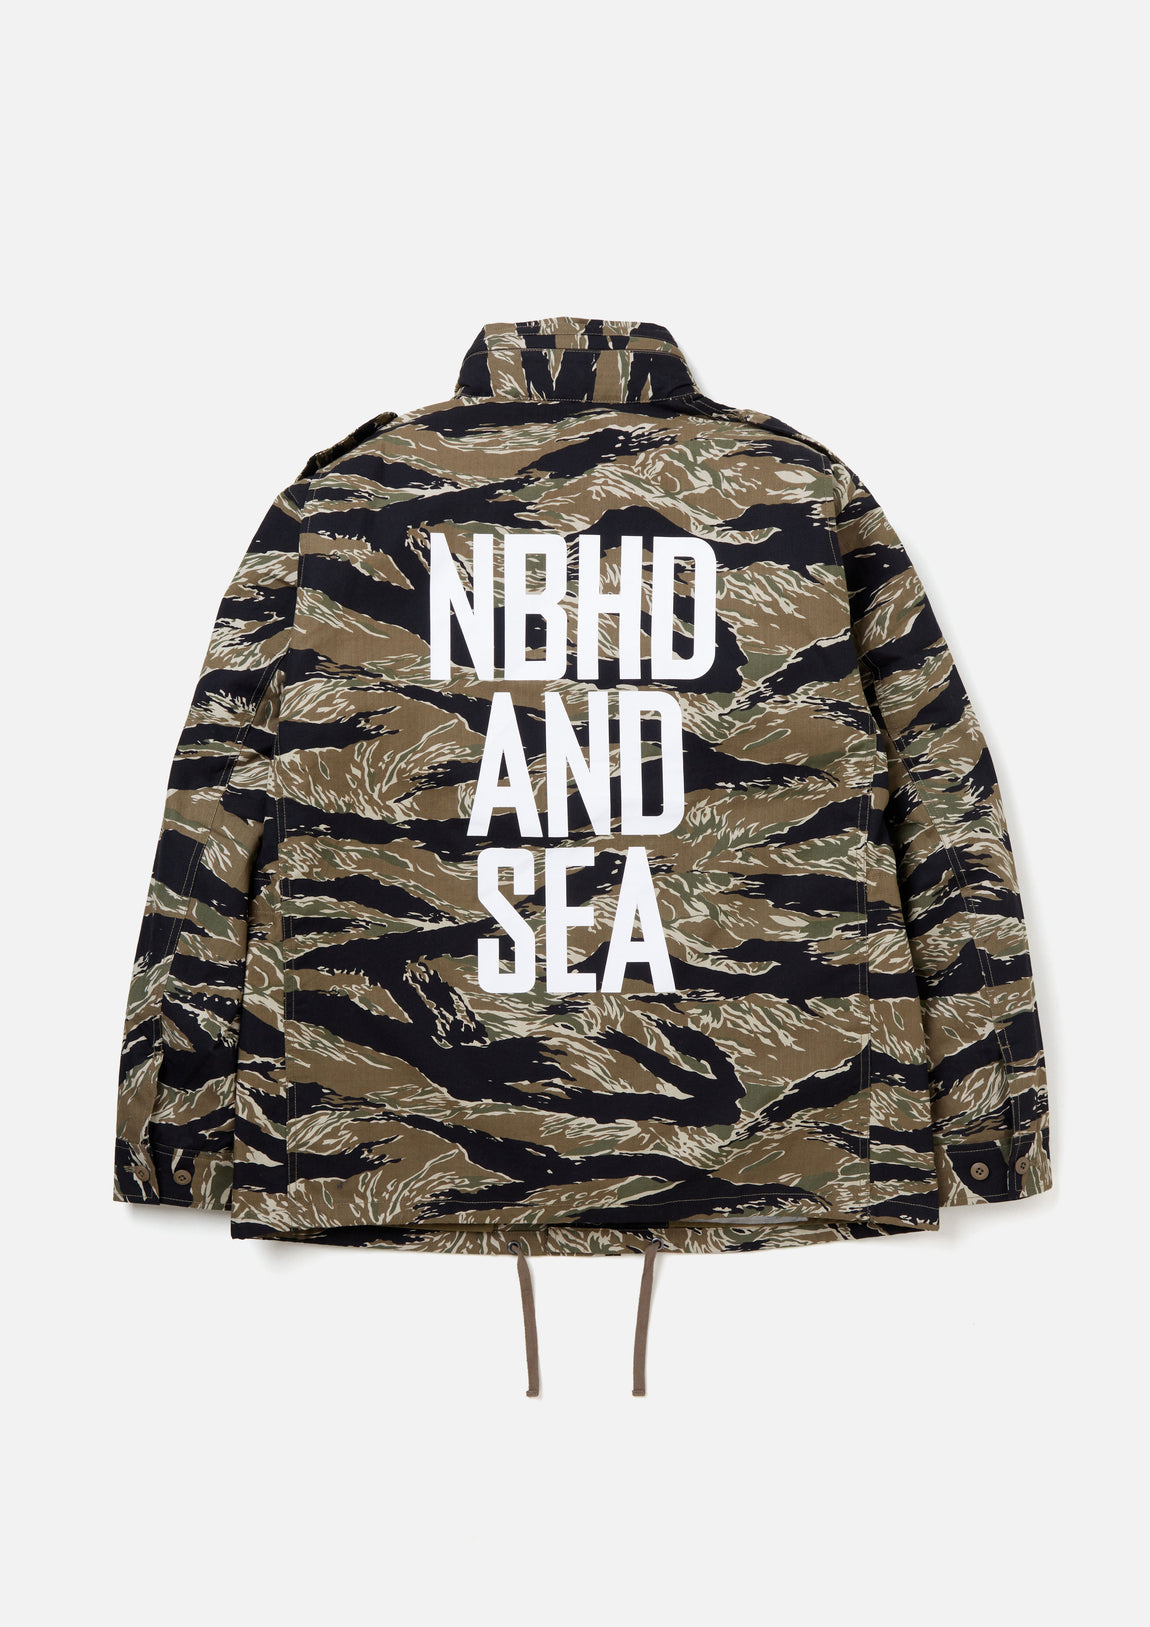 WIND AND SEA x NEIGHBORHOOD Jacket XL